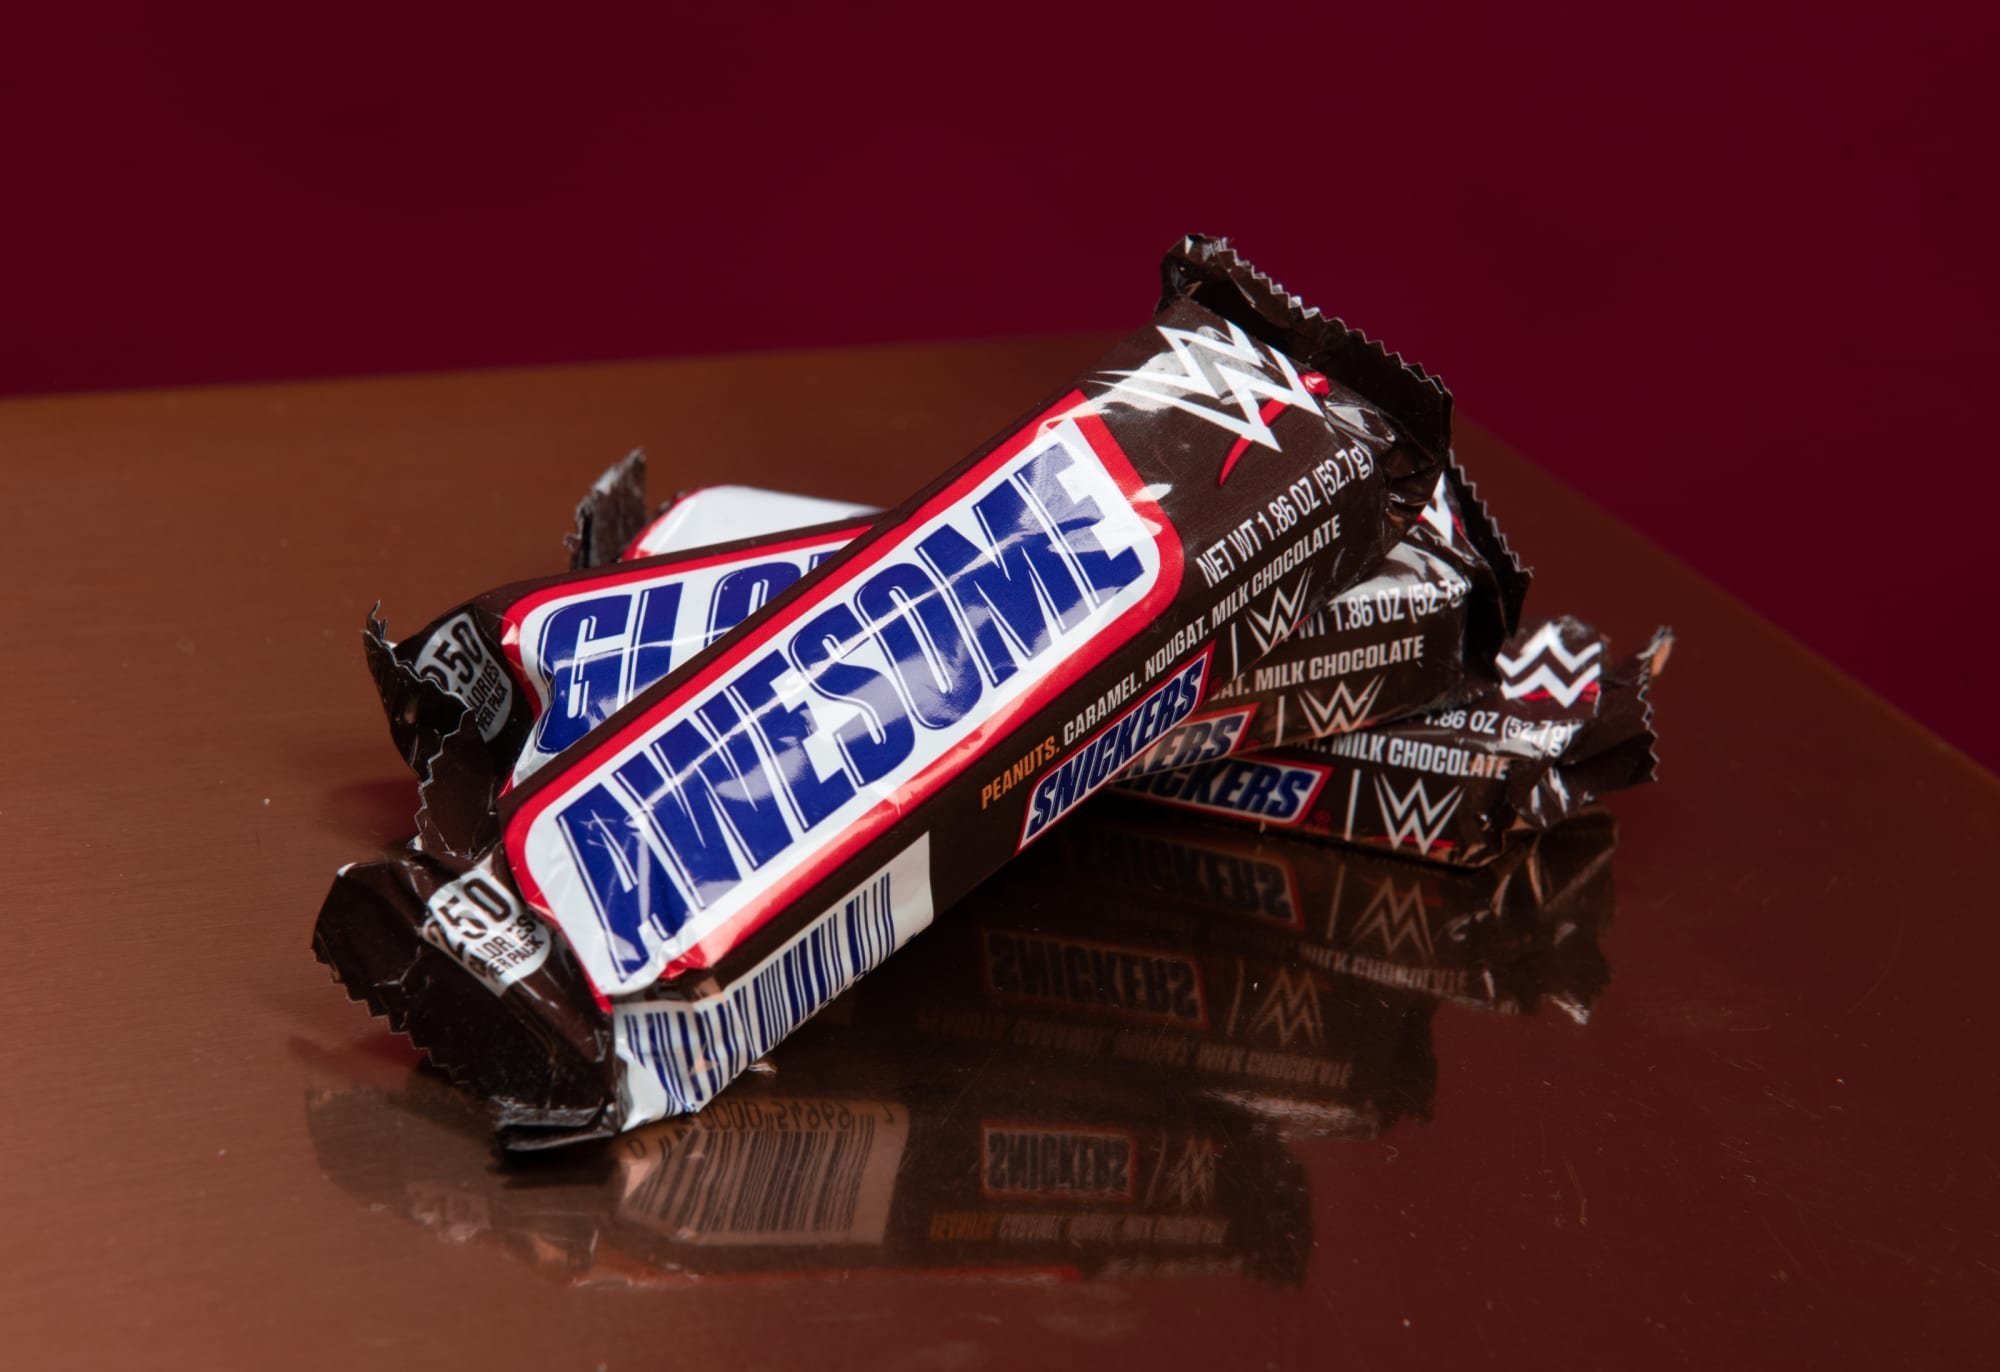 Масса купленного шоколадного батончика может быть. Шоколад Сникерс. Батончик snickers. Сникерс лимитированная версия.